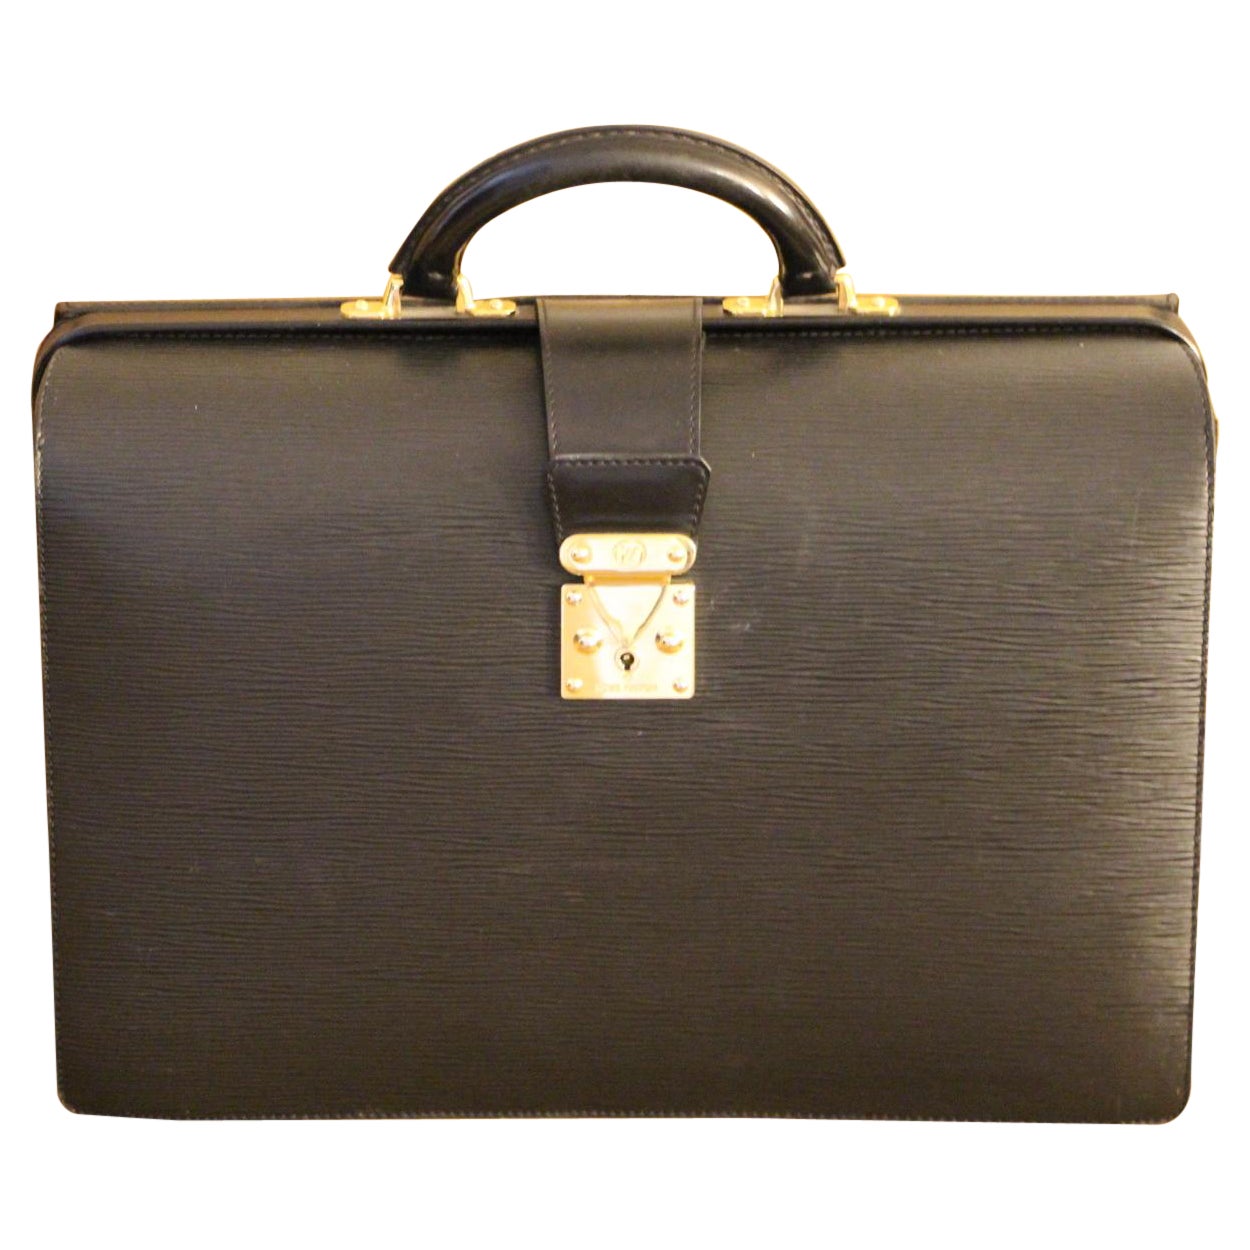 Louis Vuitton Black Leather Pilot or Doctor's Briefcase, Louis vuitton Serviette